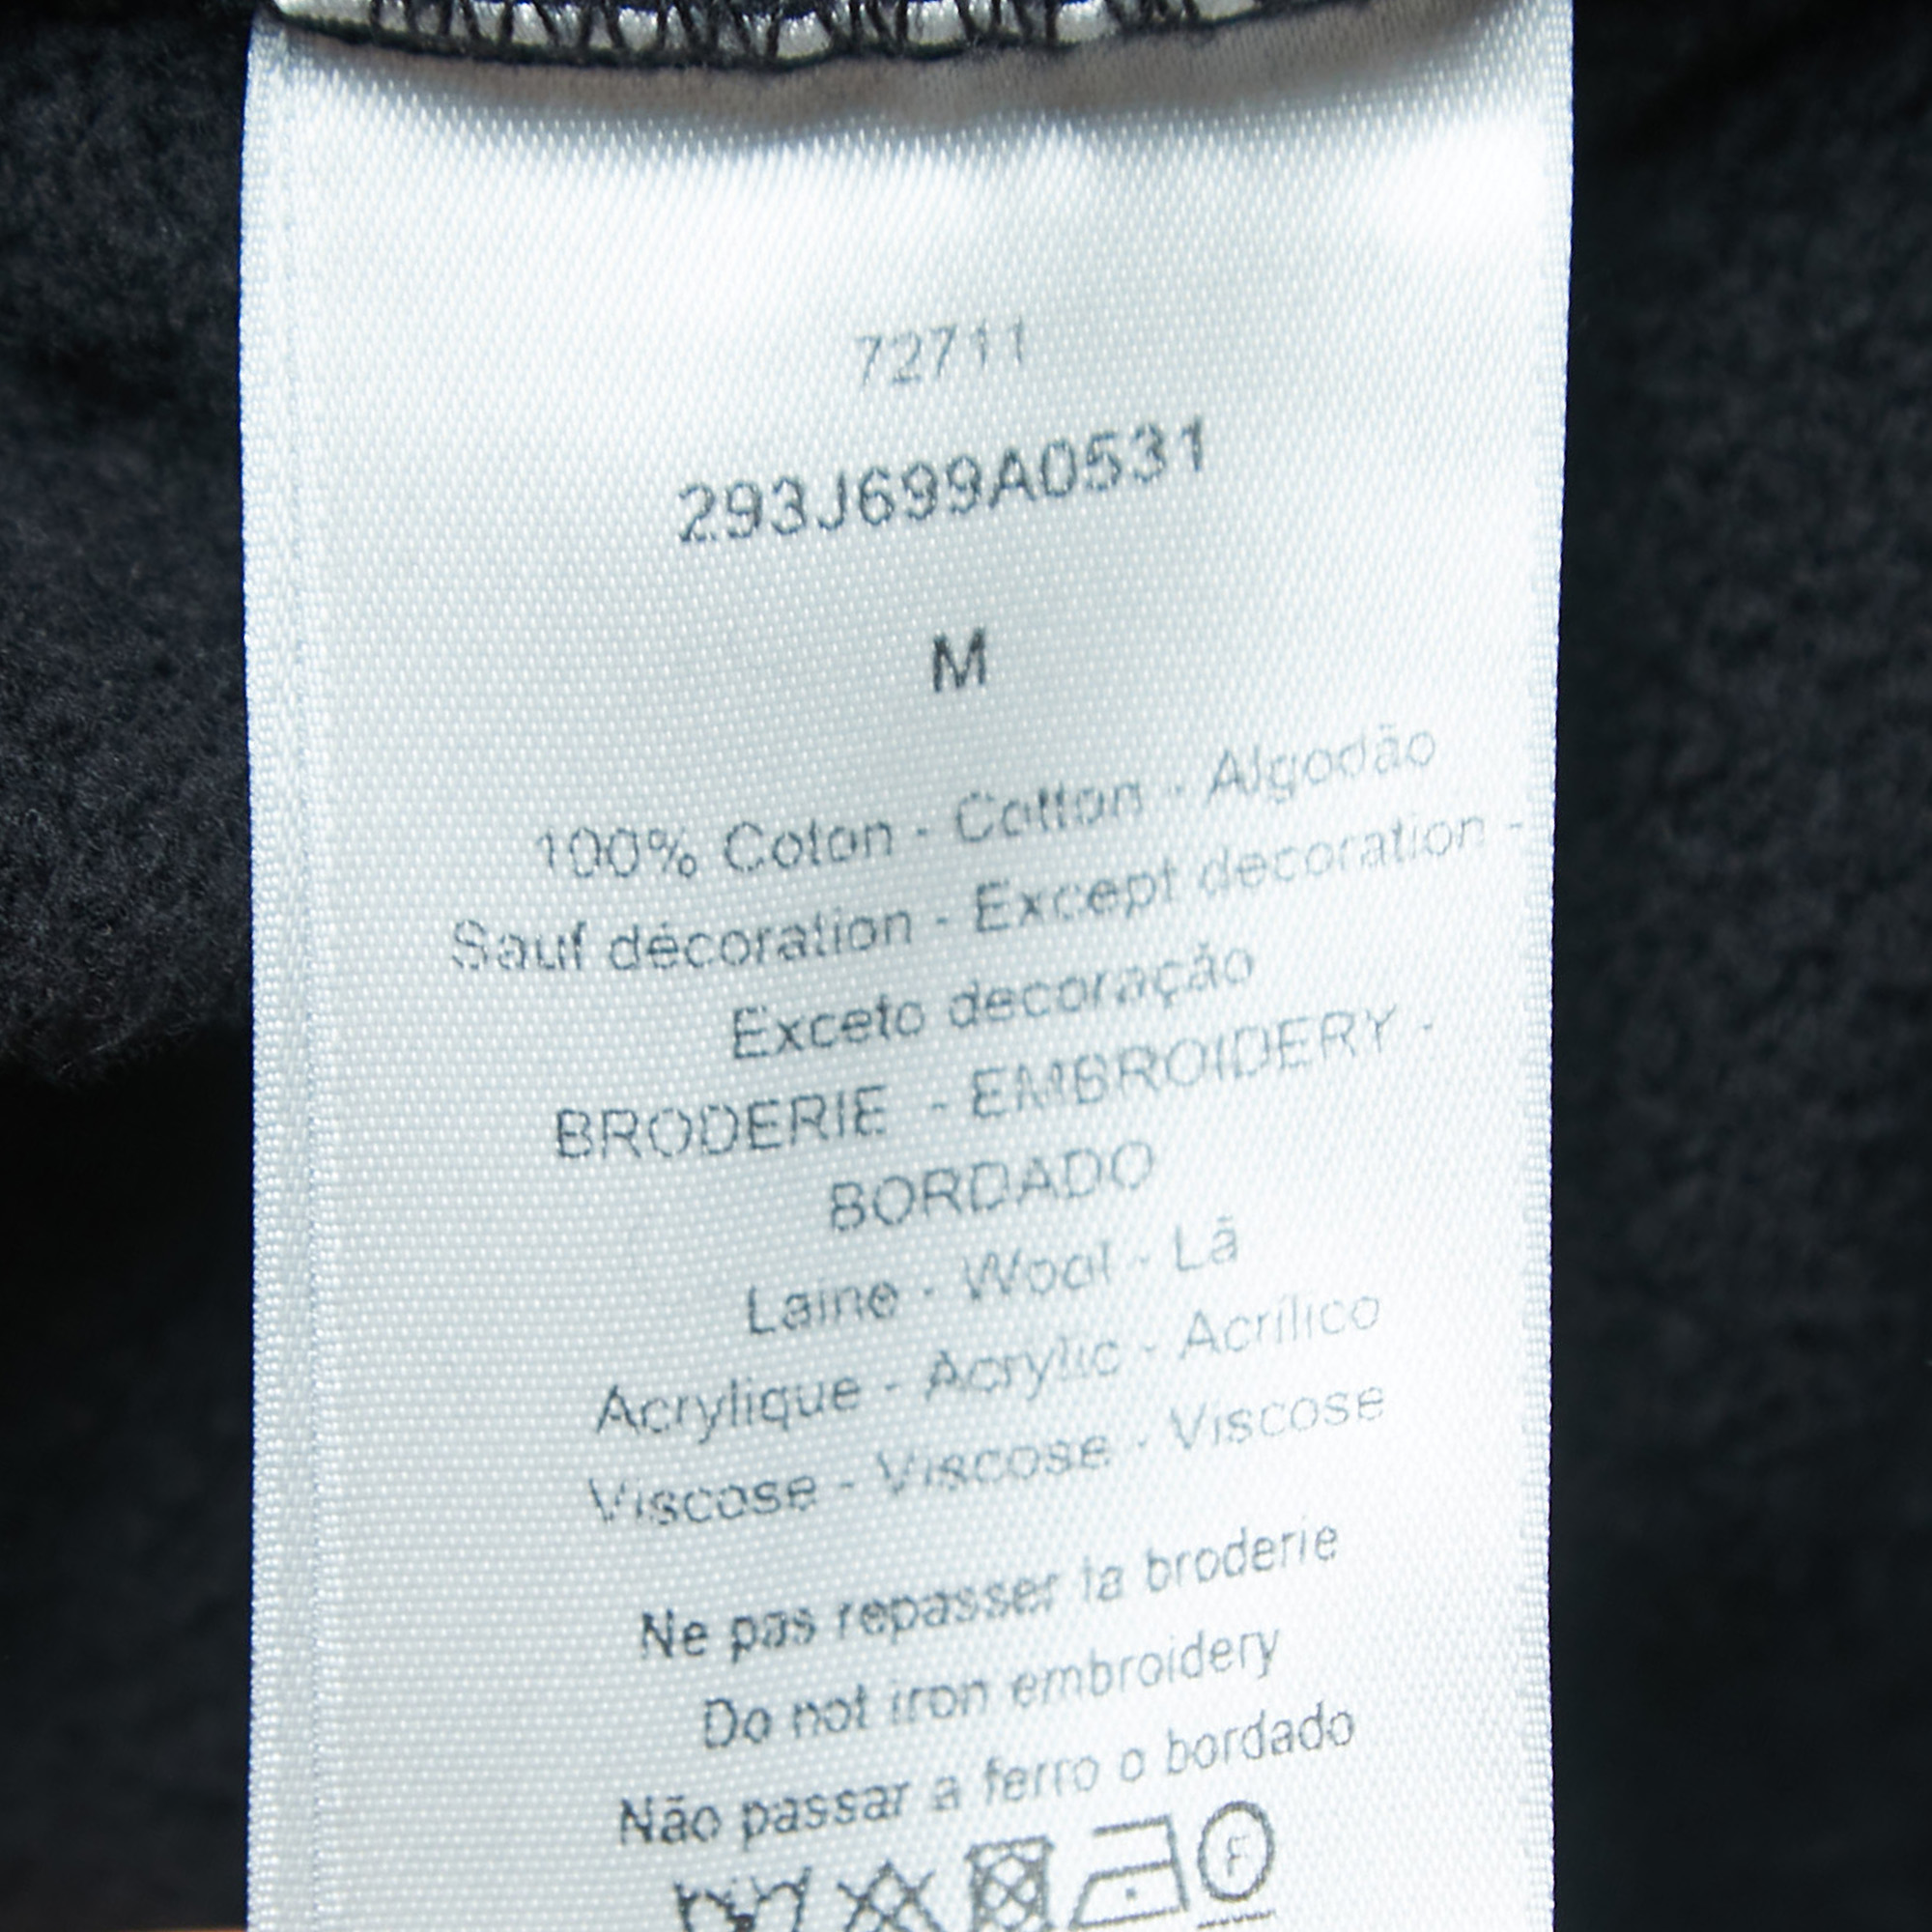 Dior Homme Black Logo Embroidered Crew Neck Sweatshirt M